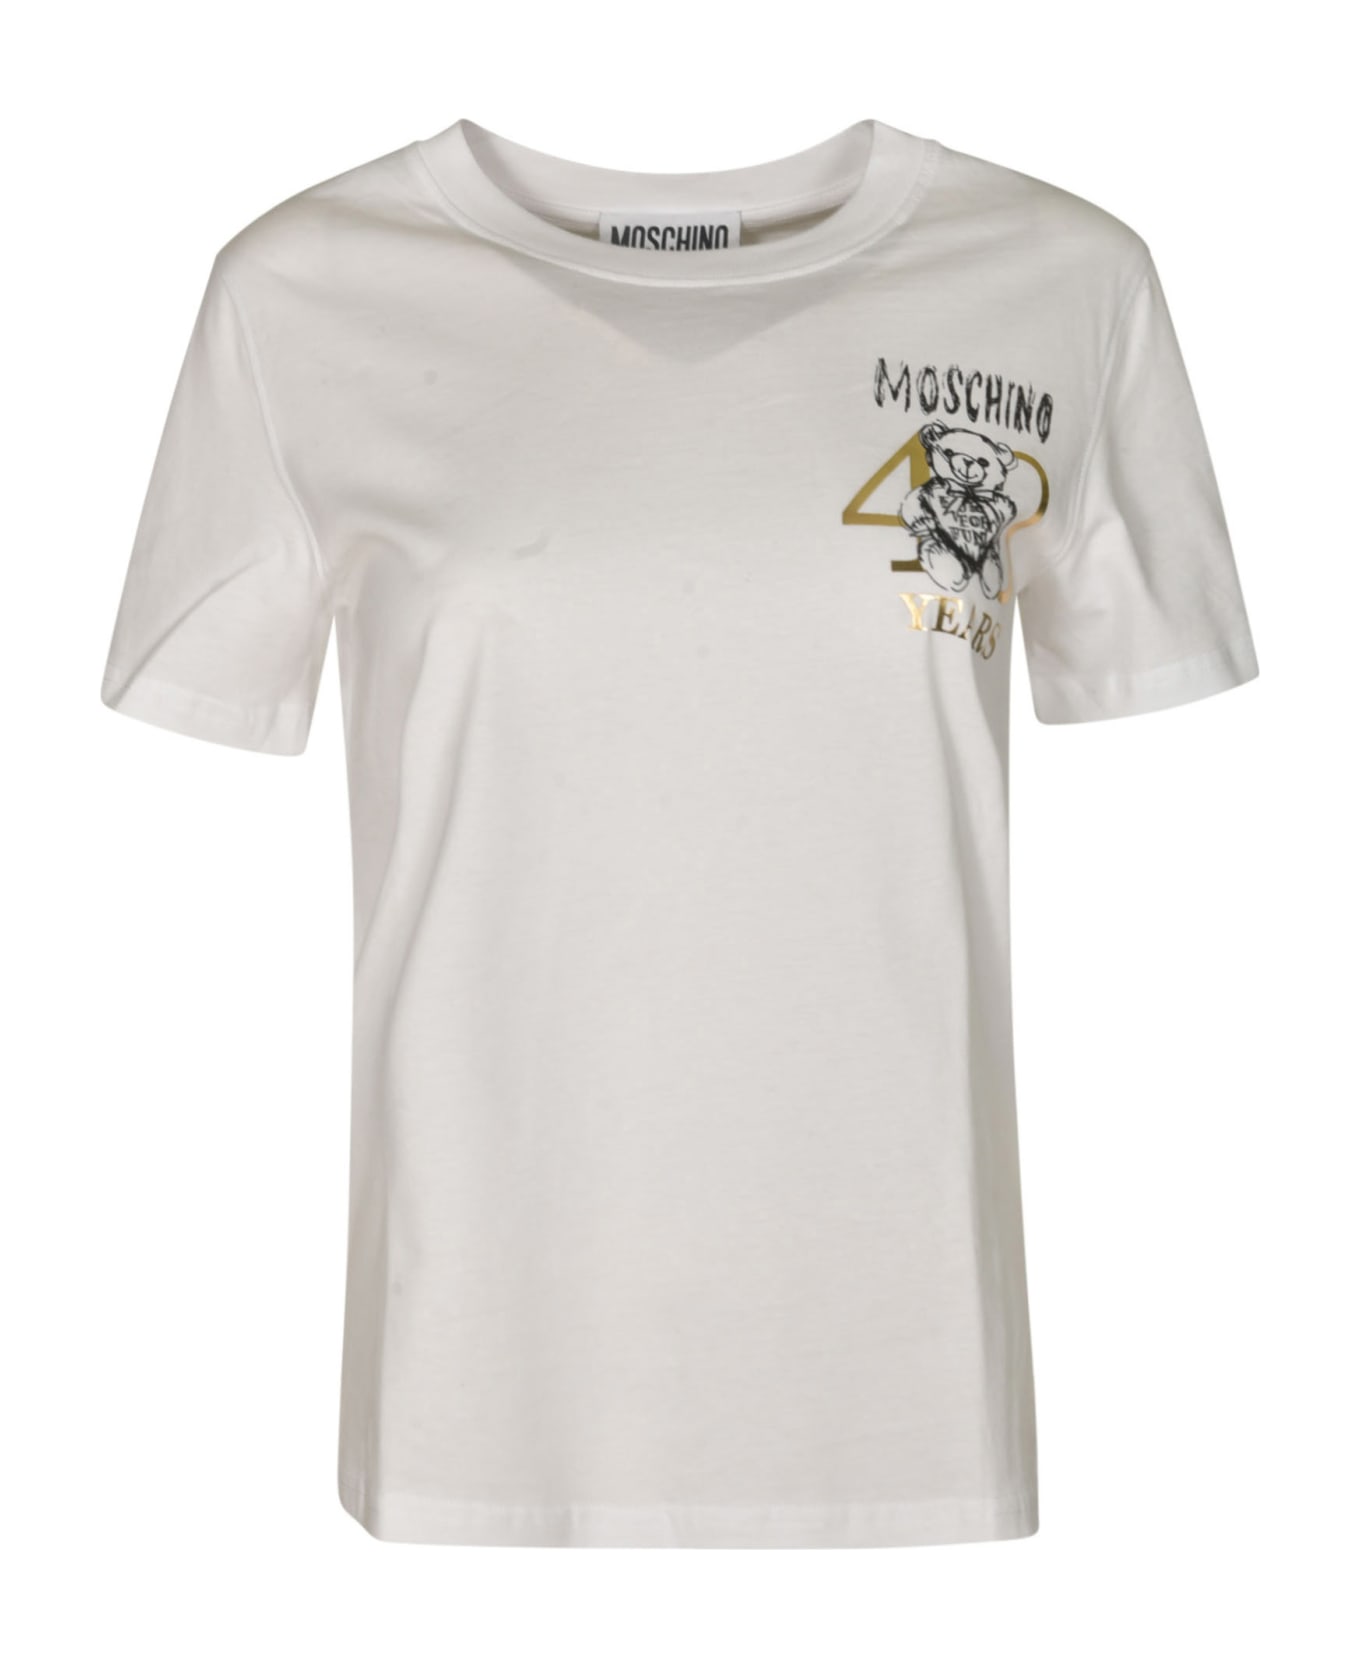 Moschino Teddy 40 Years Of Love T-shirt - White Tシャツ